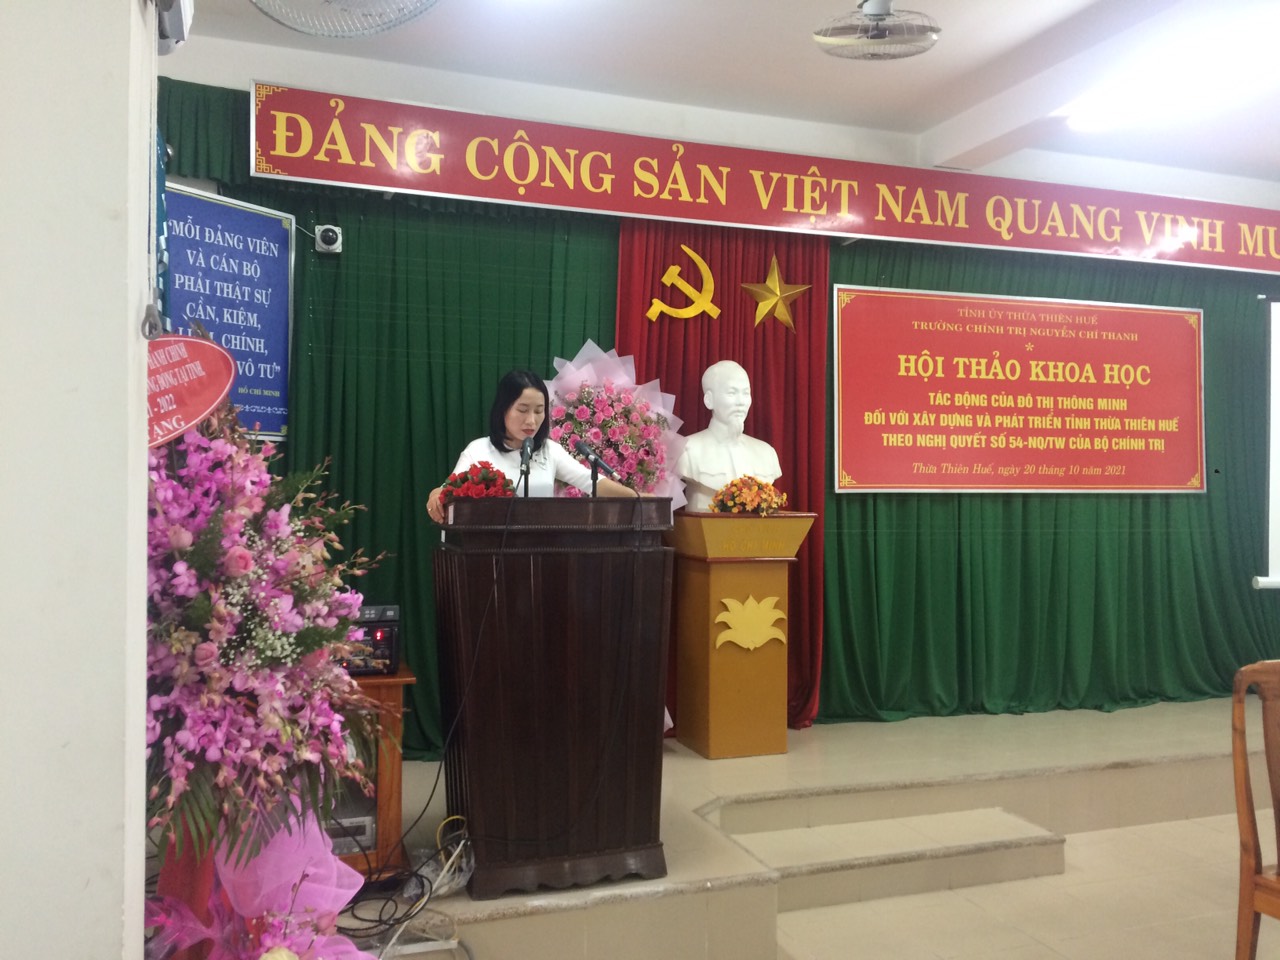 Trường Chính trị Nguyễn Chí Thanh là nơi đào tạo các đội ngũ lãnh đạo, cơ quan công chức và cán bộ cấp cao trong hệ thống chính trị Việt Nam. Hình ảnh của trường sẽ giúp bạn hiểu rõ hơn về kiến thức và sự quan trọng của việc đào tạo cán bộ trong xã hội của chúng ta.